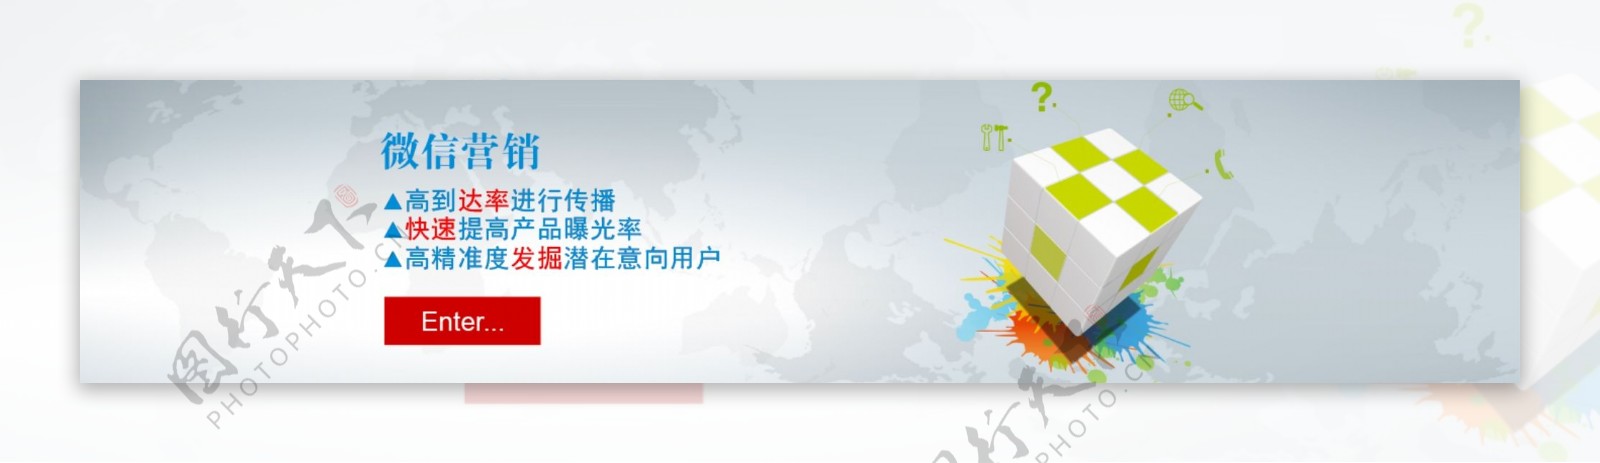 微信营销网站banner图片